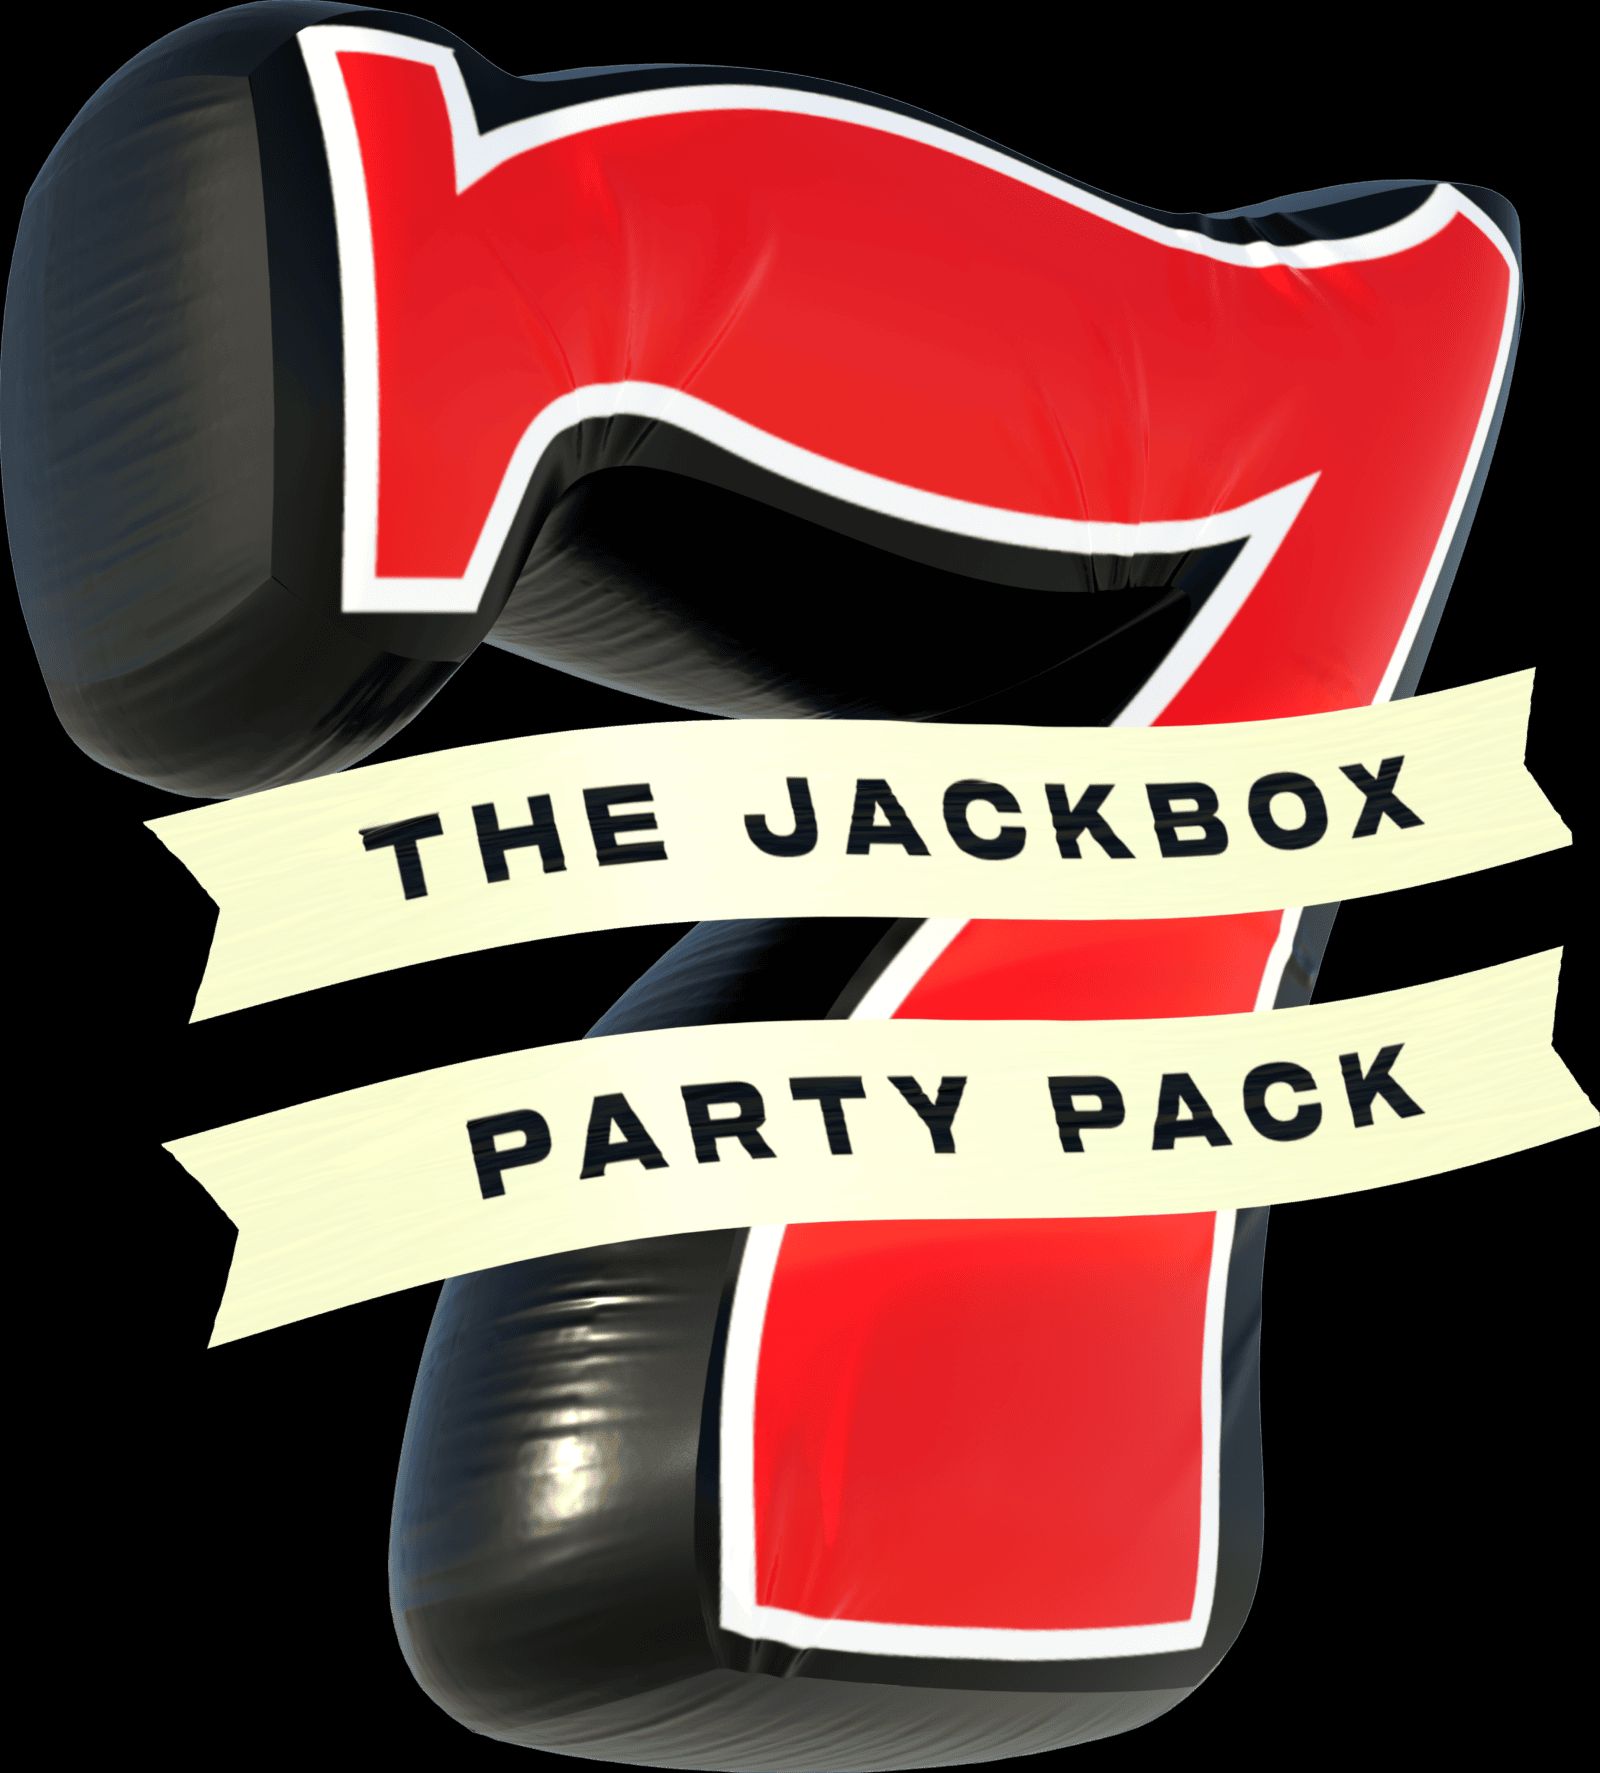 Jackbox Party Pack 10 traz diversão para festas e streaming